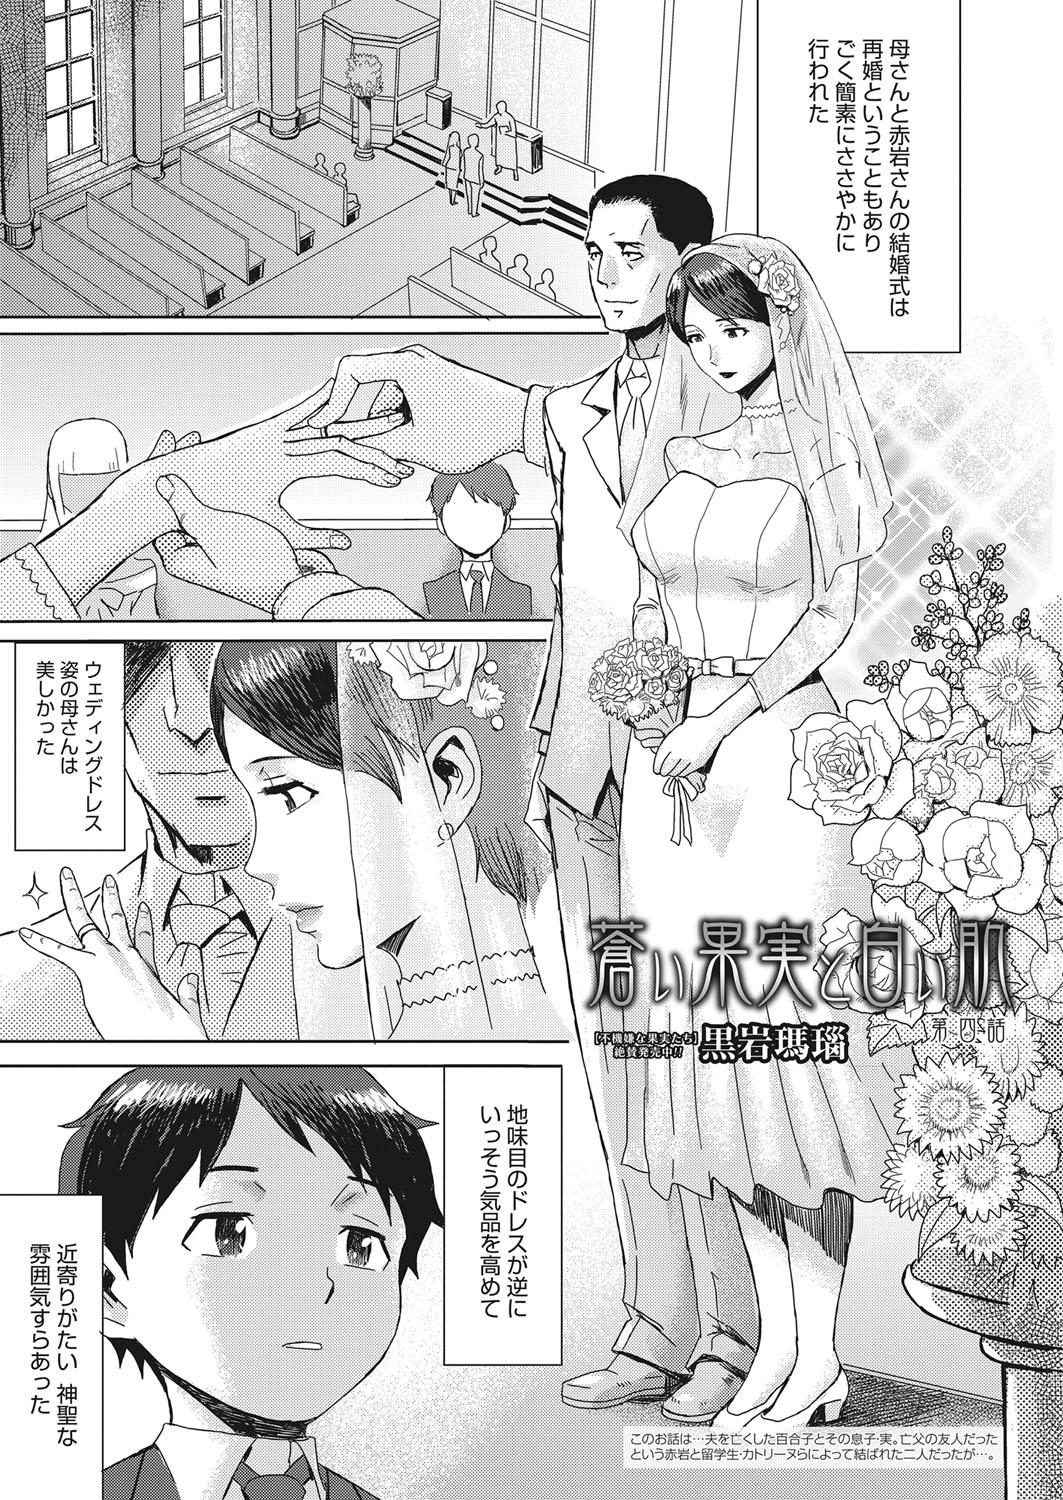 Perfect Web Manga Bangaichi Vol. 15 Sex Party - Page 4